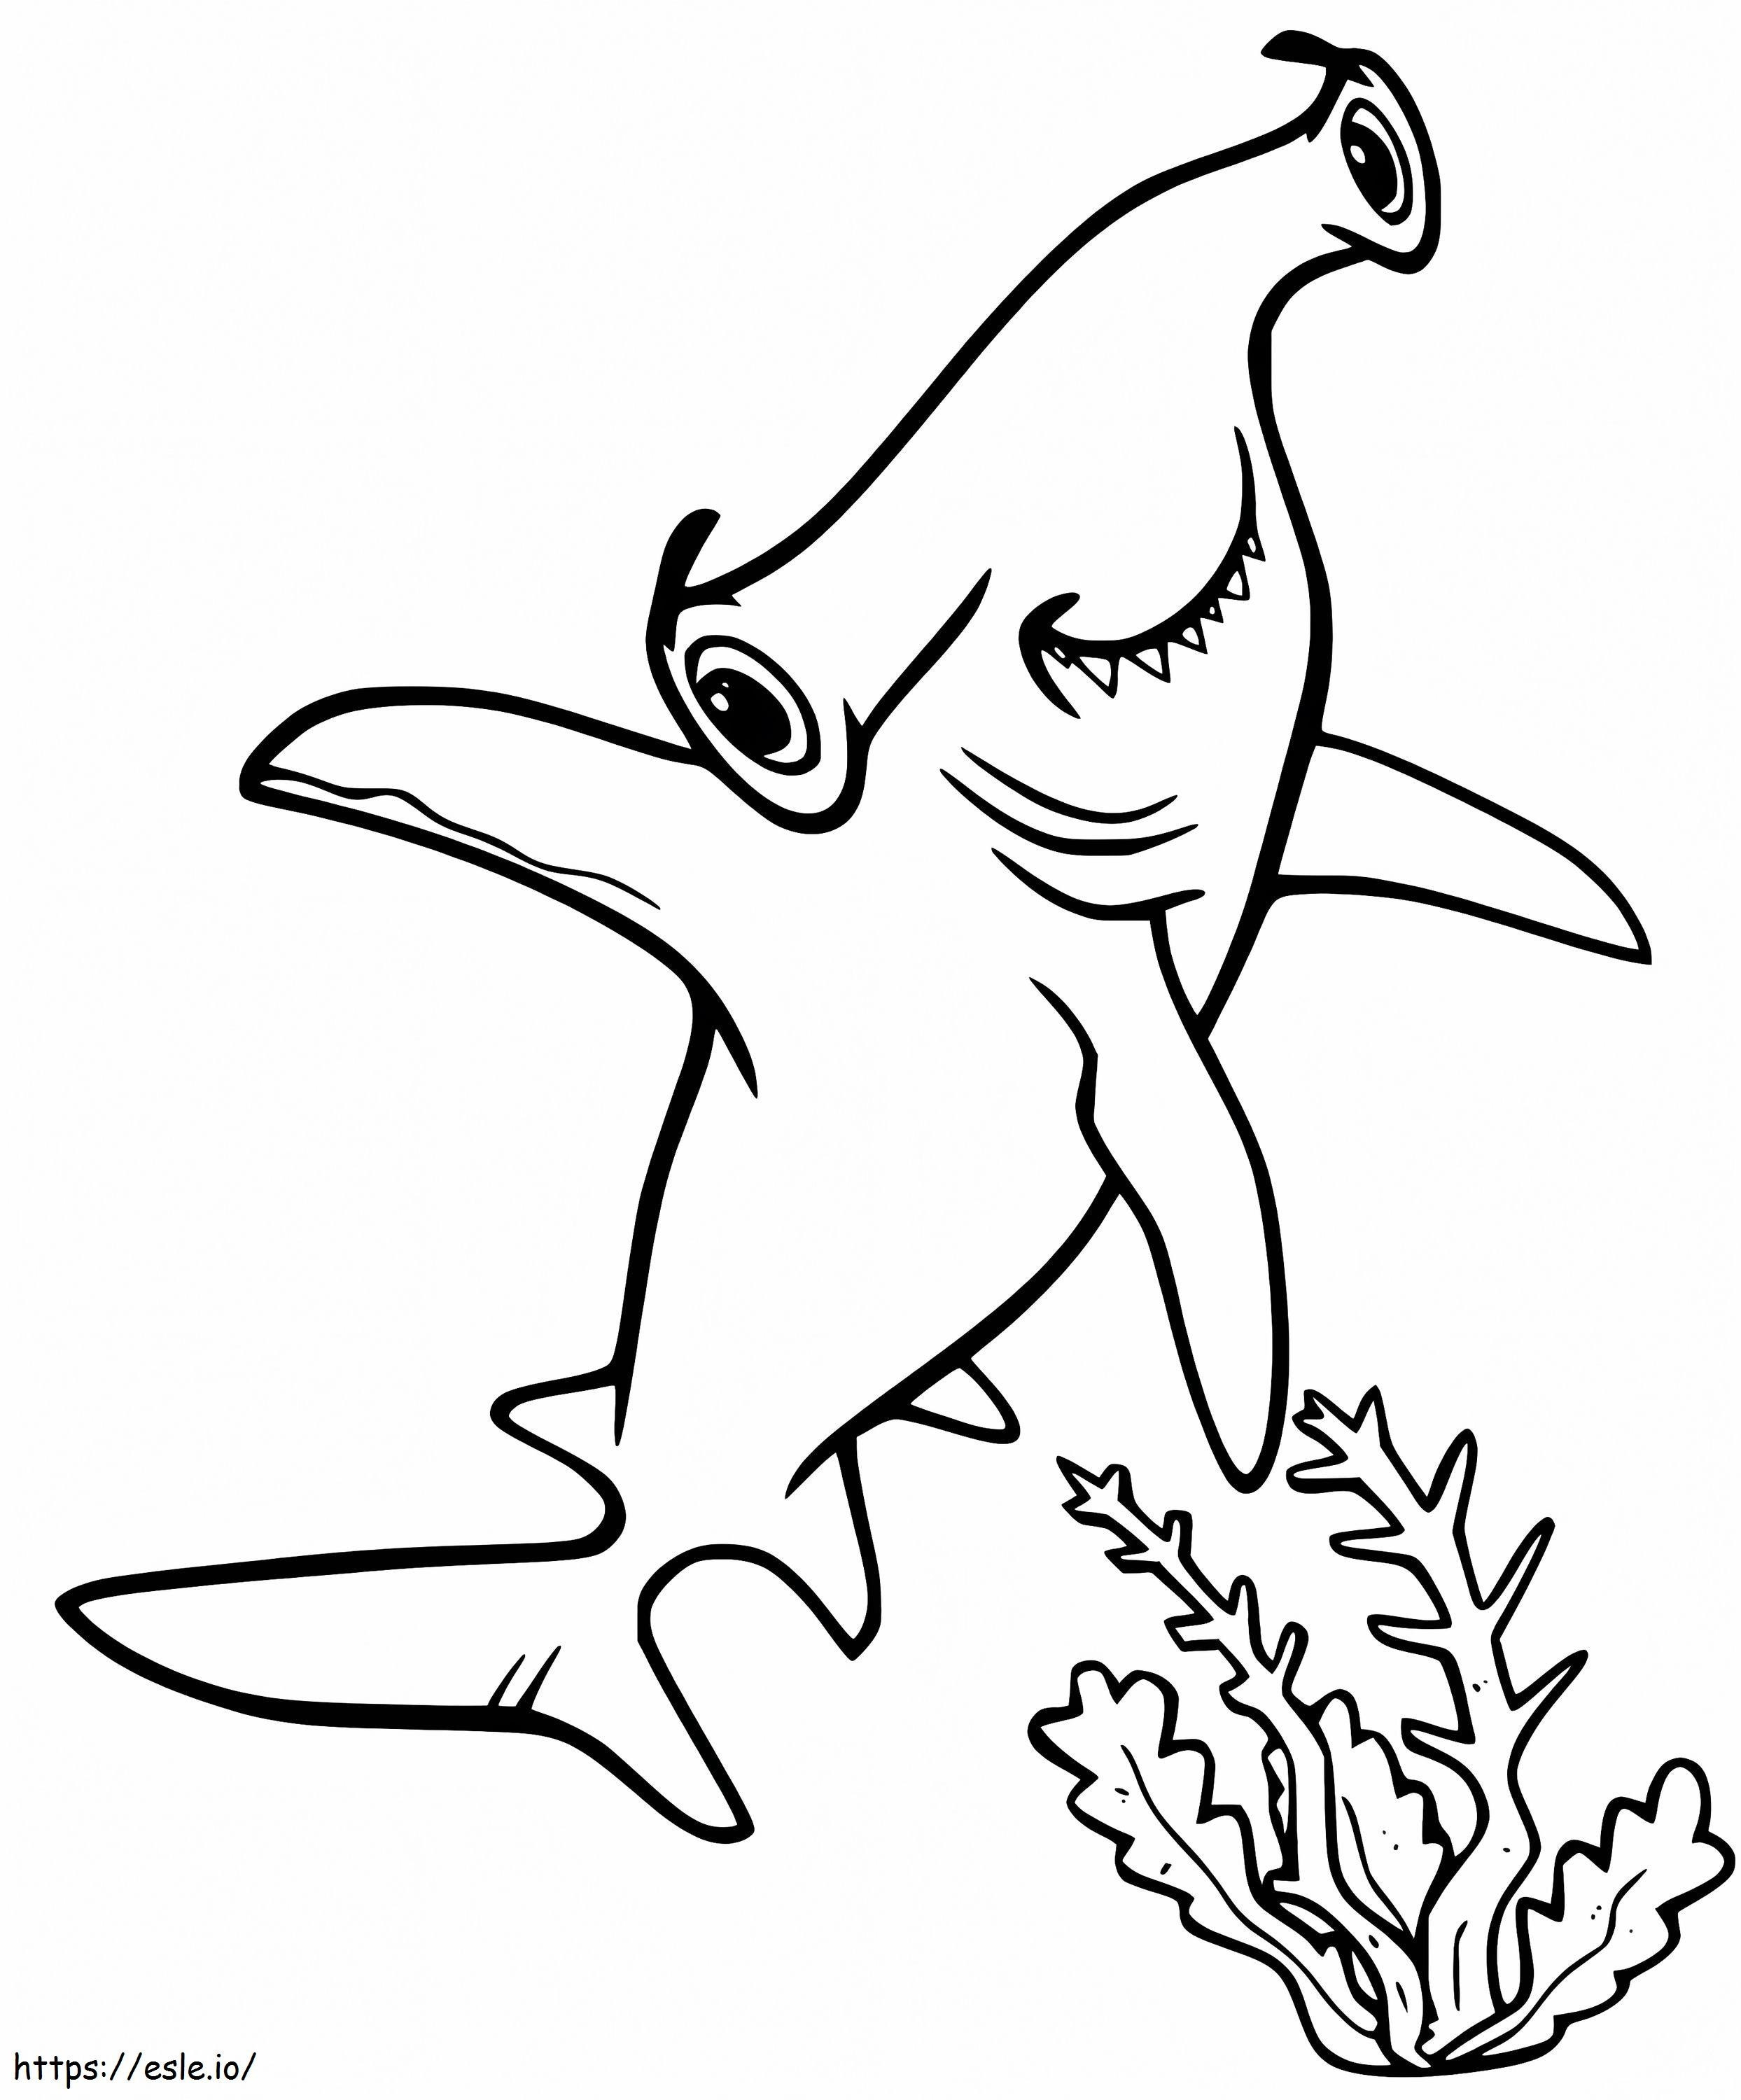 Tubarão-martelo feliz para colorir